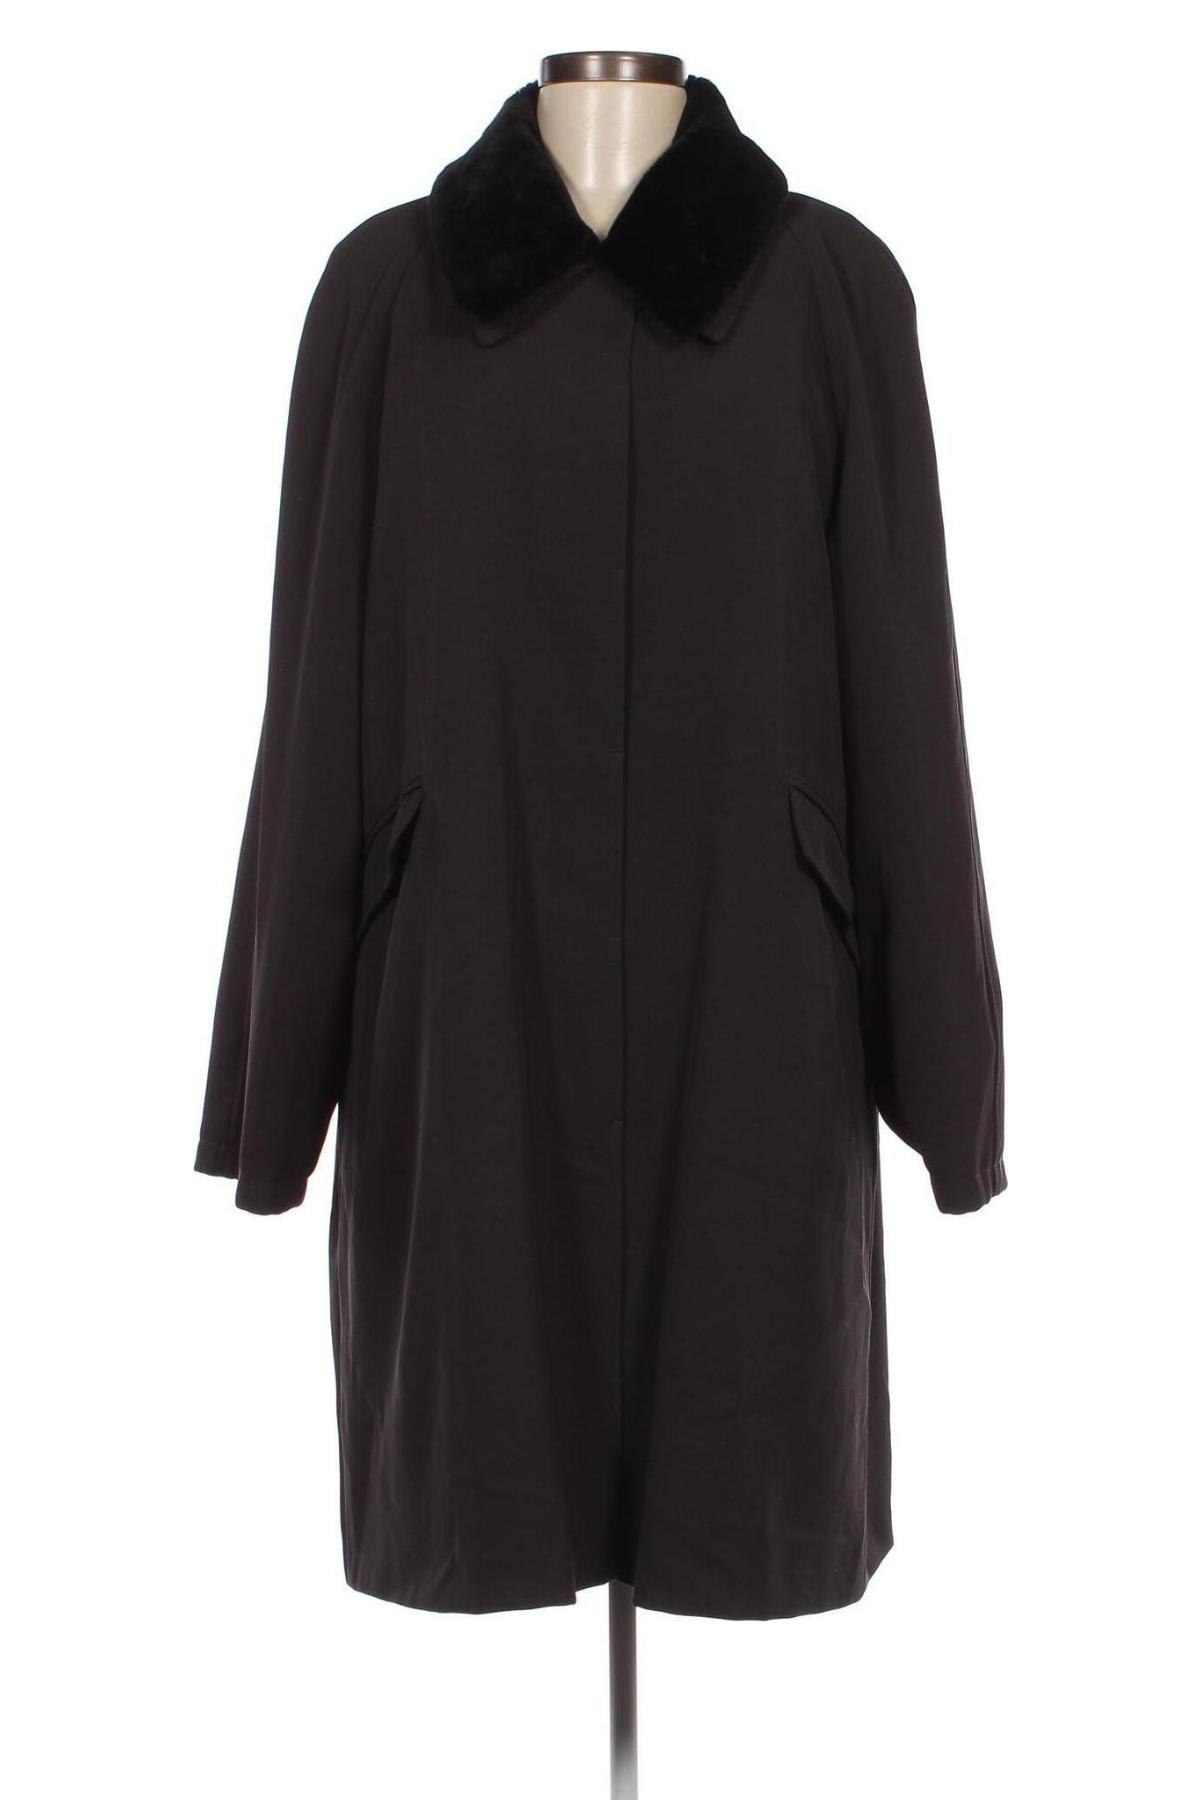 Γυναικείο παλτό Maura Styled By Claudia Sträter, Μέγεθος L, Χρώμα Μαύρο, Τιμή 38,60 €